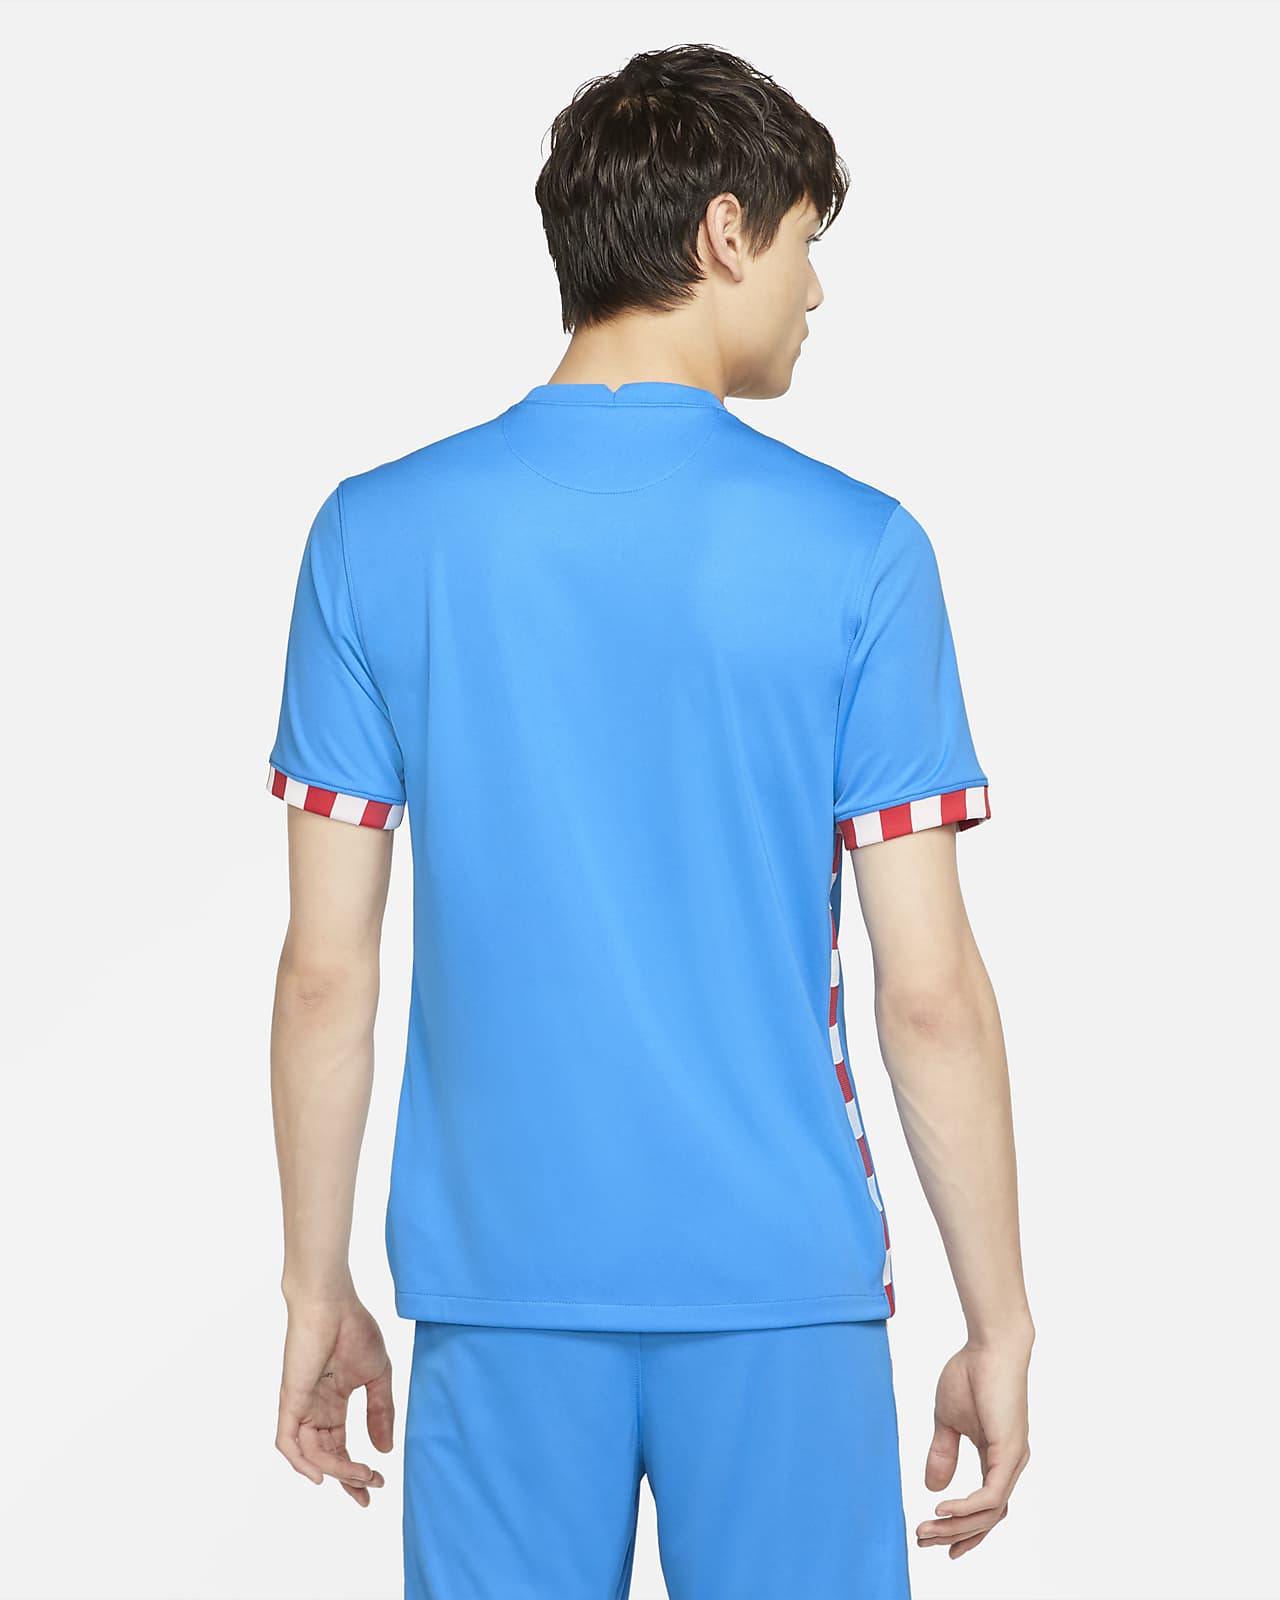 Tercera equipación Atlético de Madrid 2021/22 Camiseta Nike Dri-FIT - Hombre. Nike ES